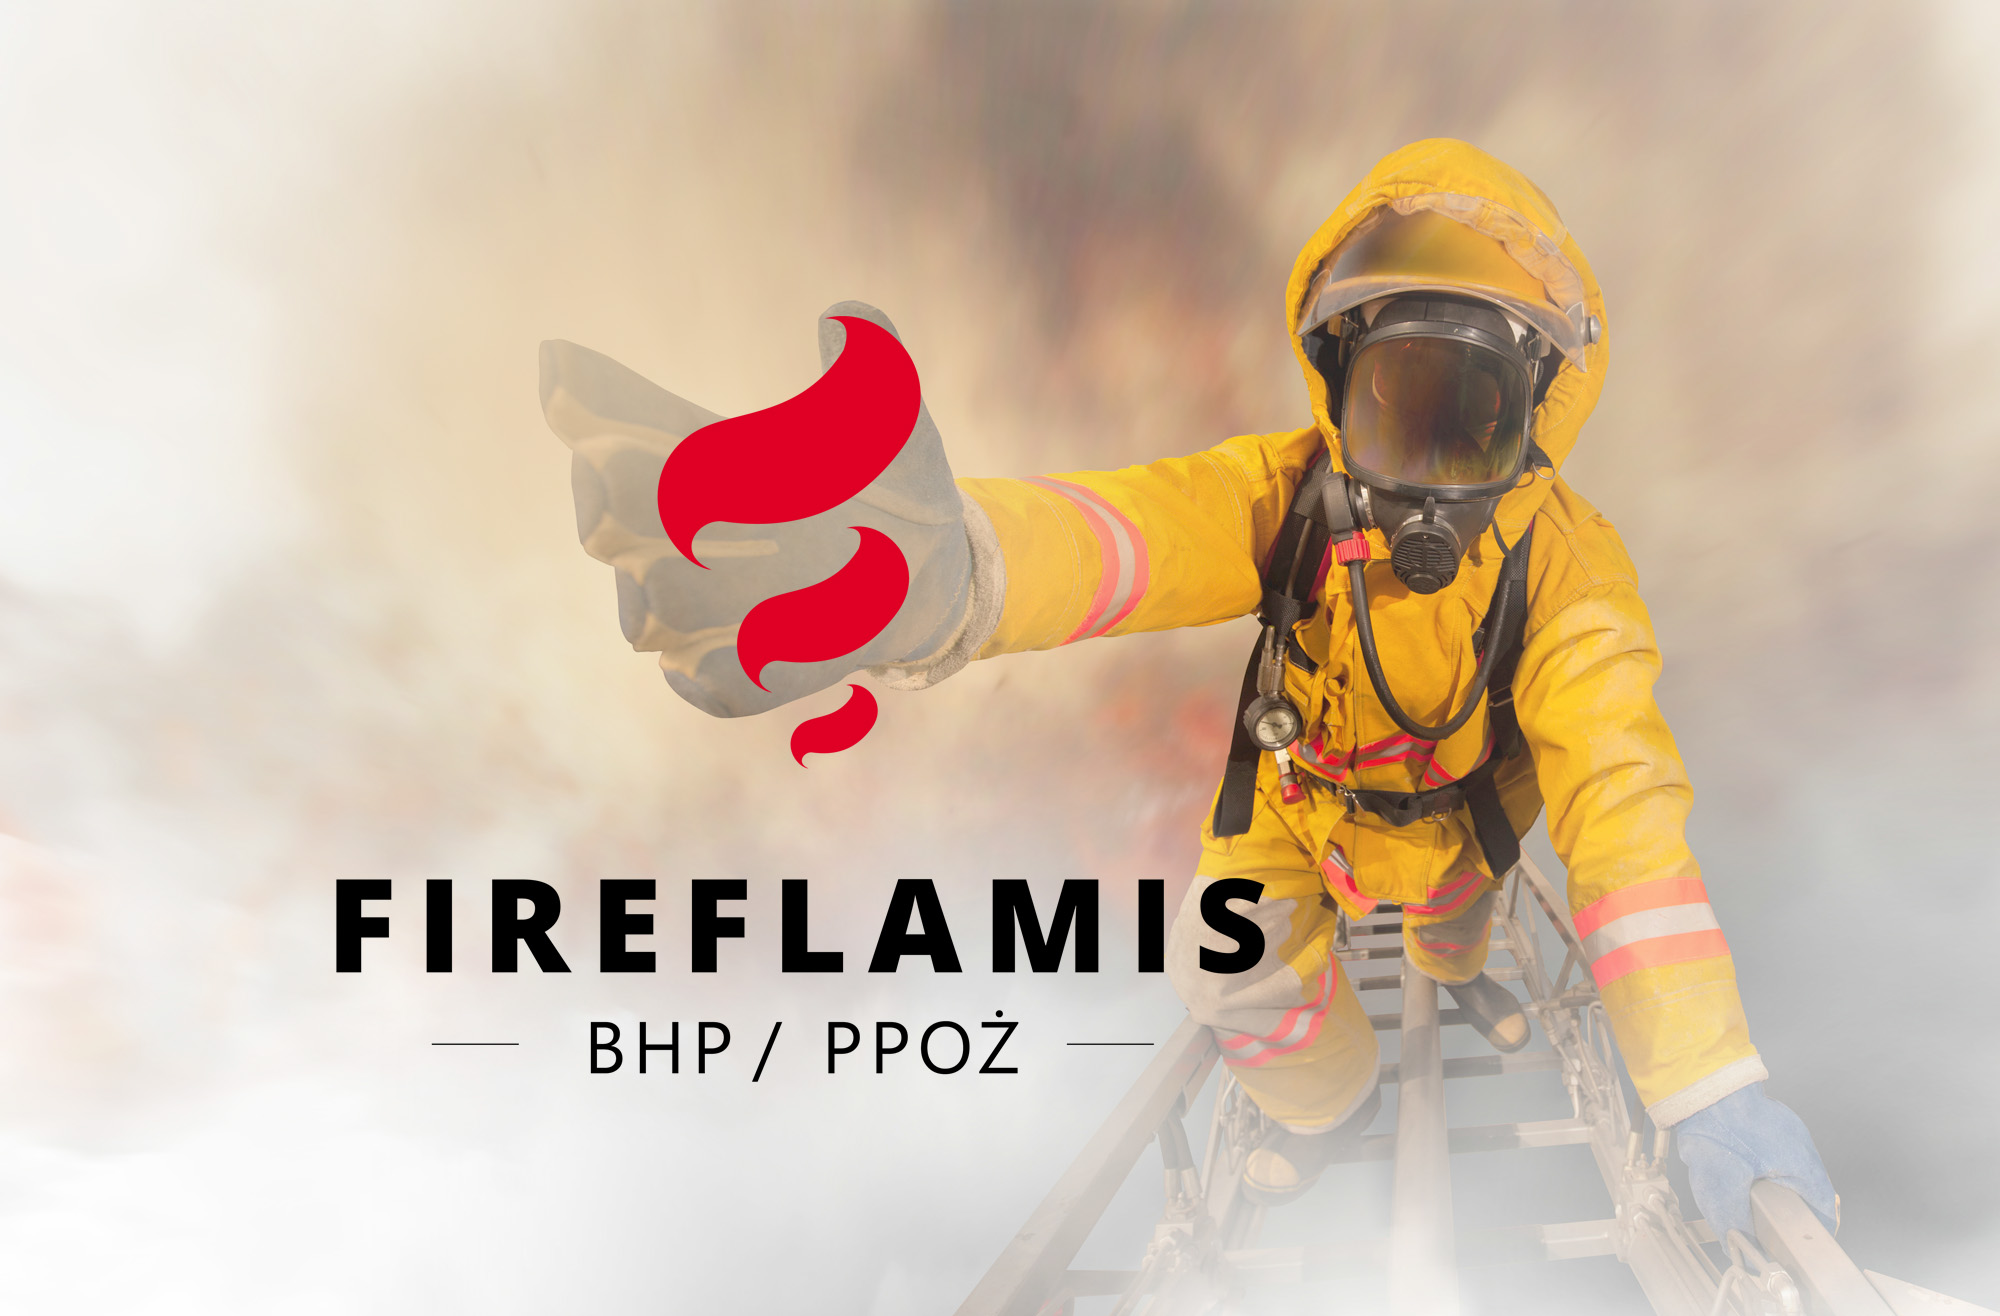 Fireflamis - BHP/PPOŻ - Szczecin. Shadowart projekt logo, reklama, projekt strony internetowej.